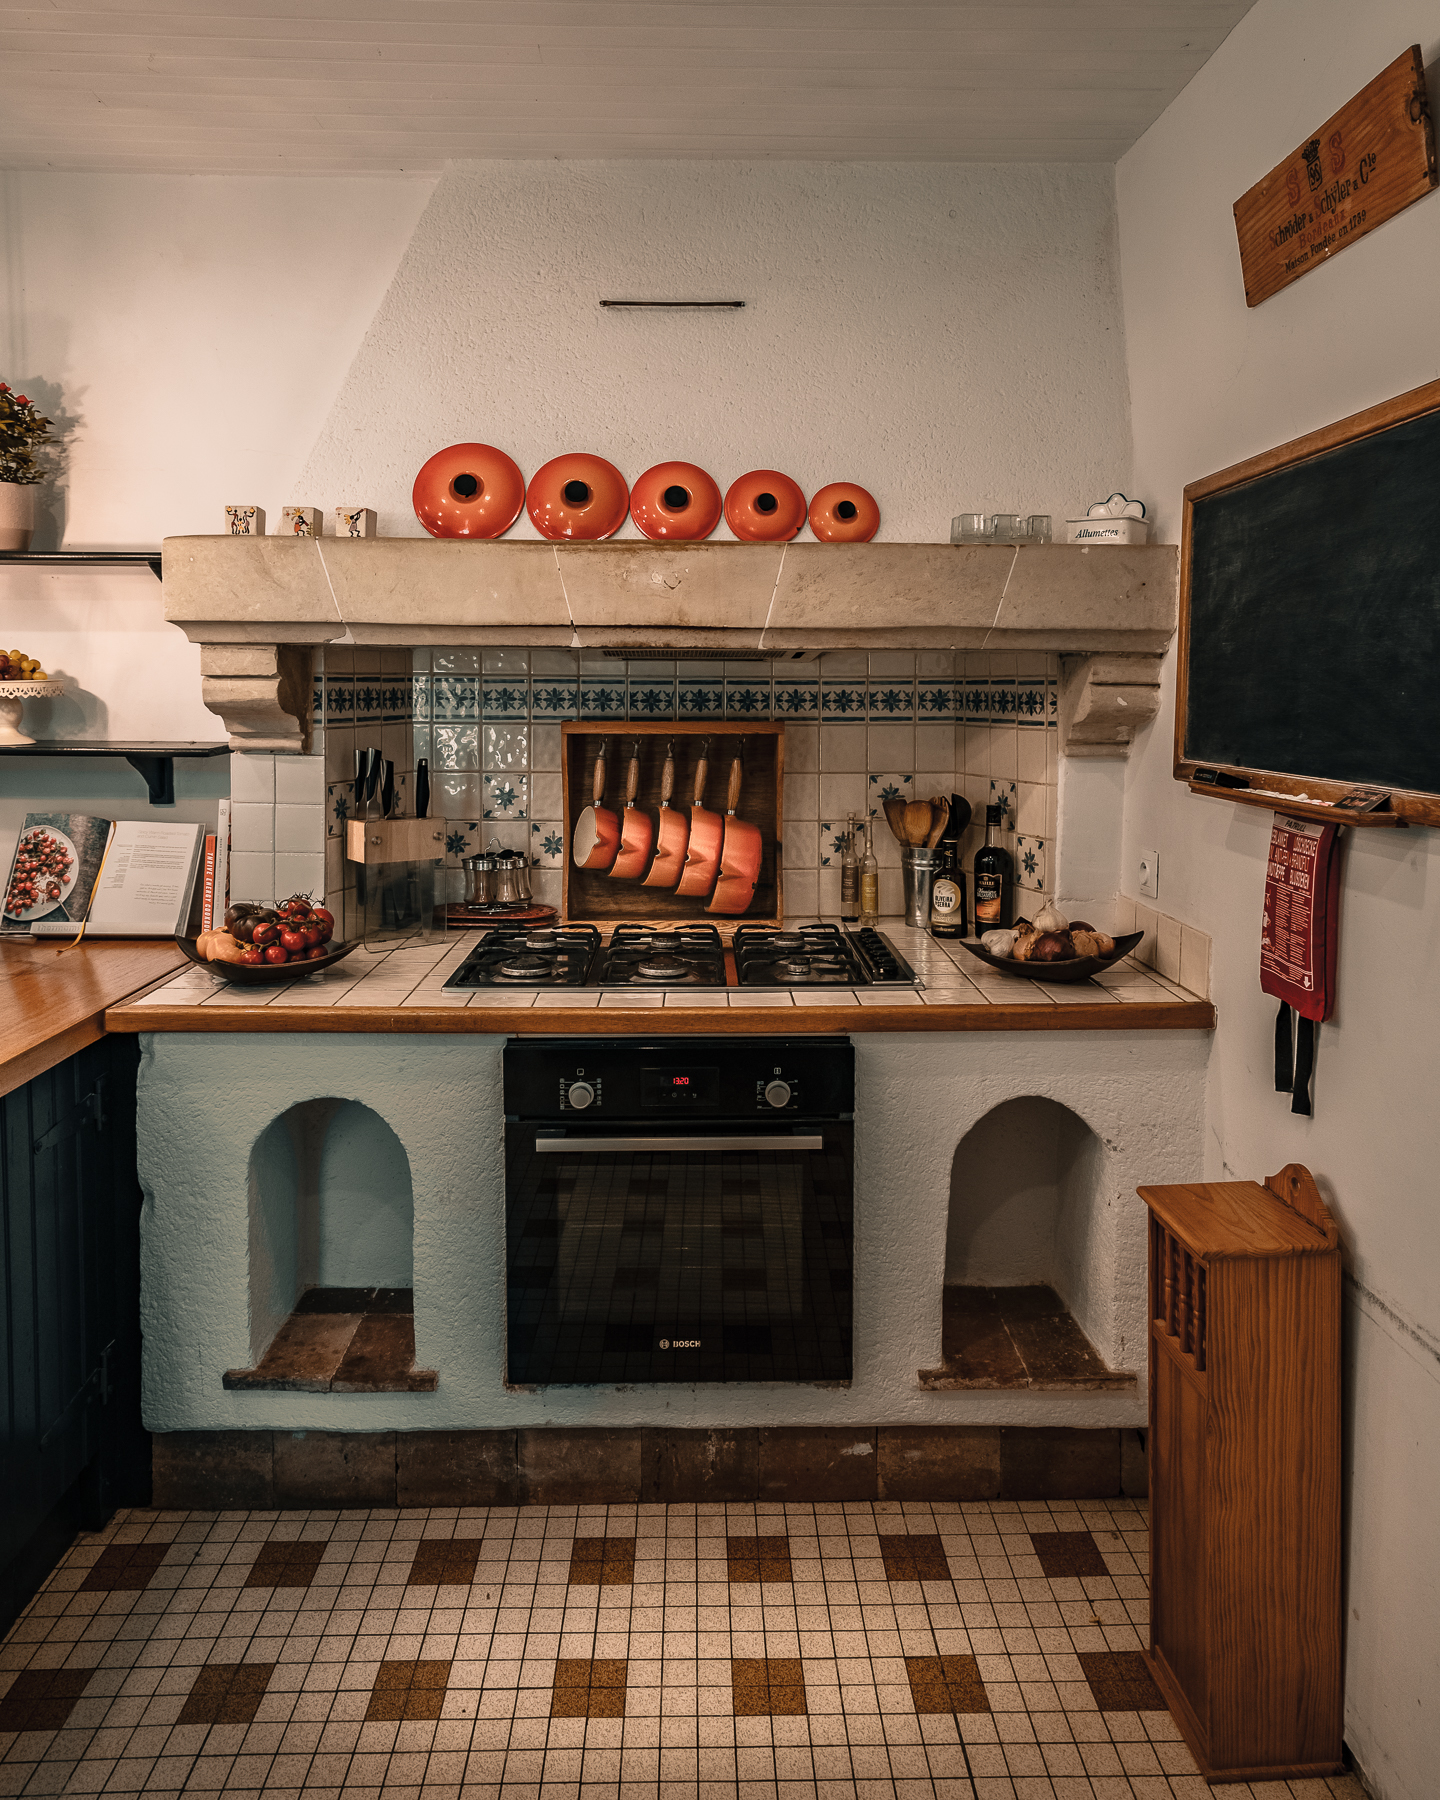 Hob-kitchen-chateau-de-la-vigne